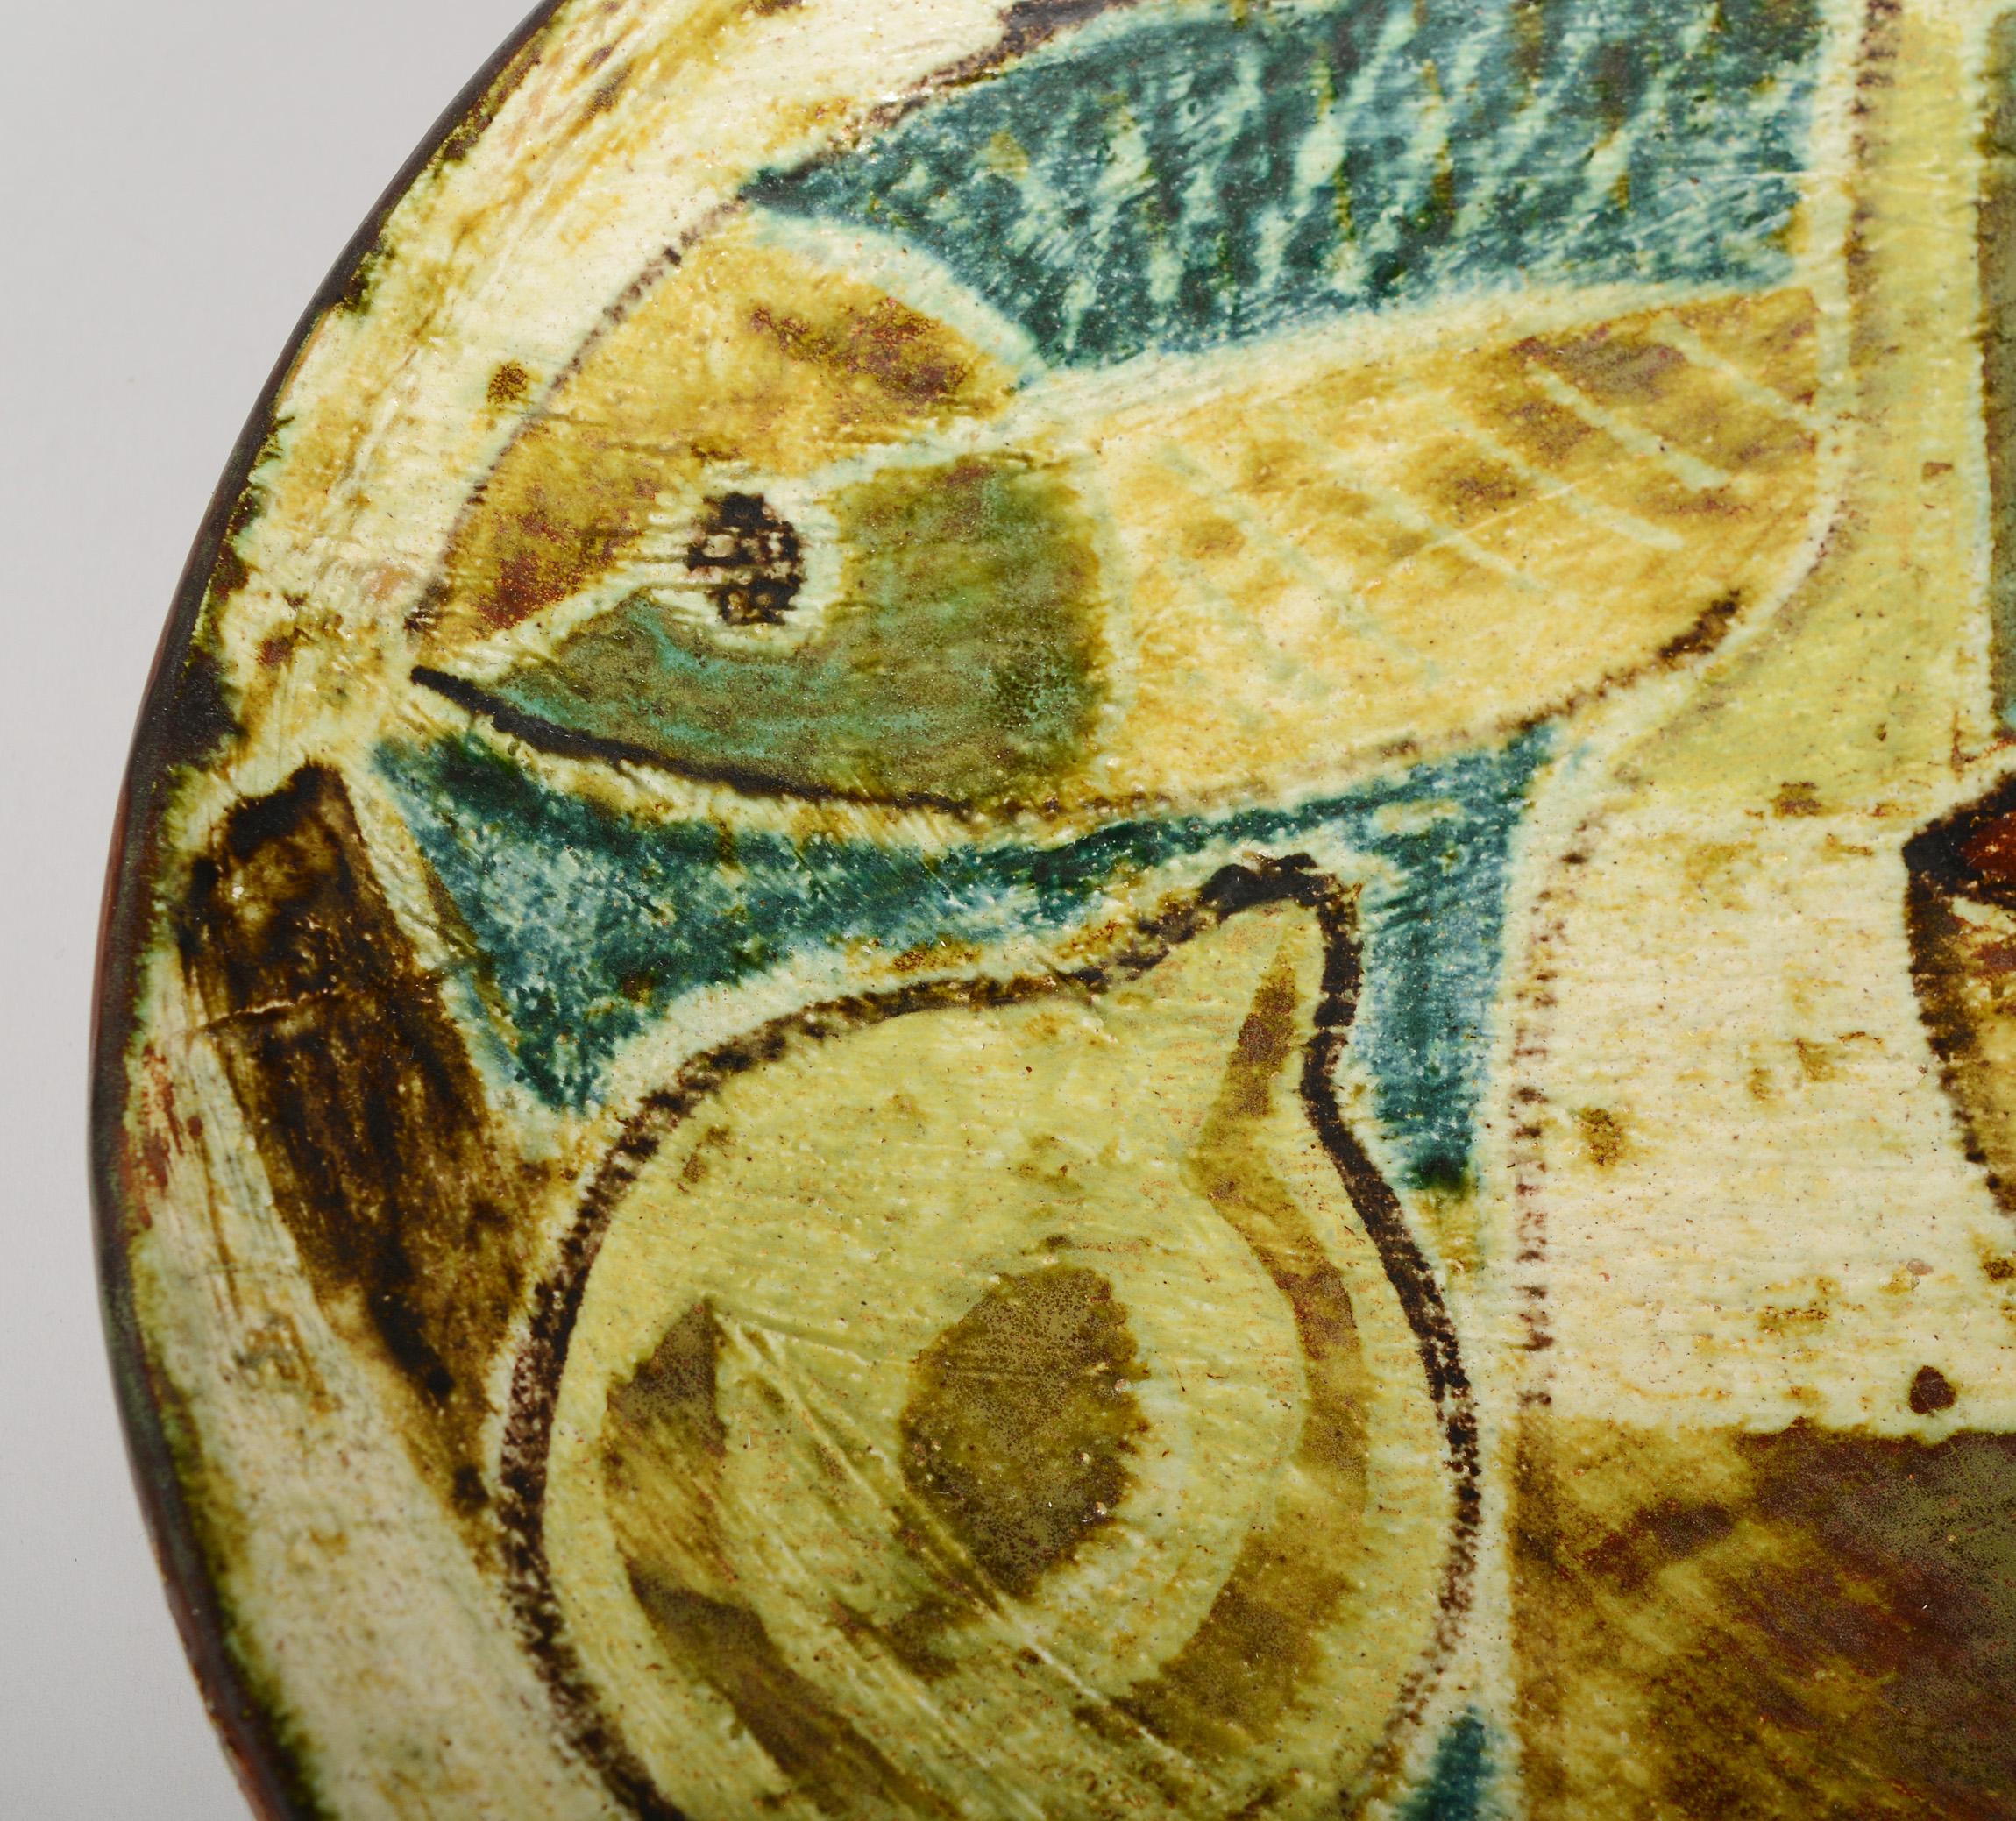 Ceramic Bowl by Preben Herluf Gottschalk Olsen with Cubist Still Life 1